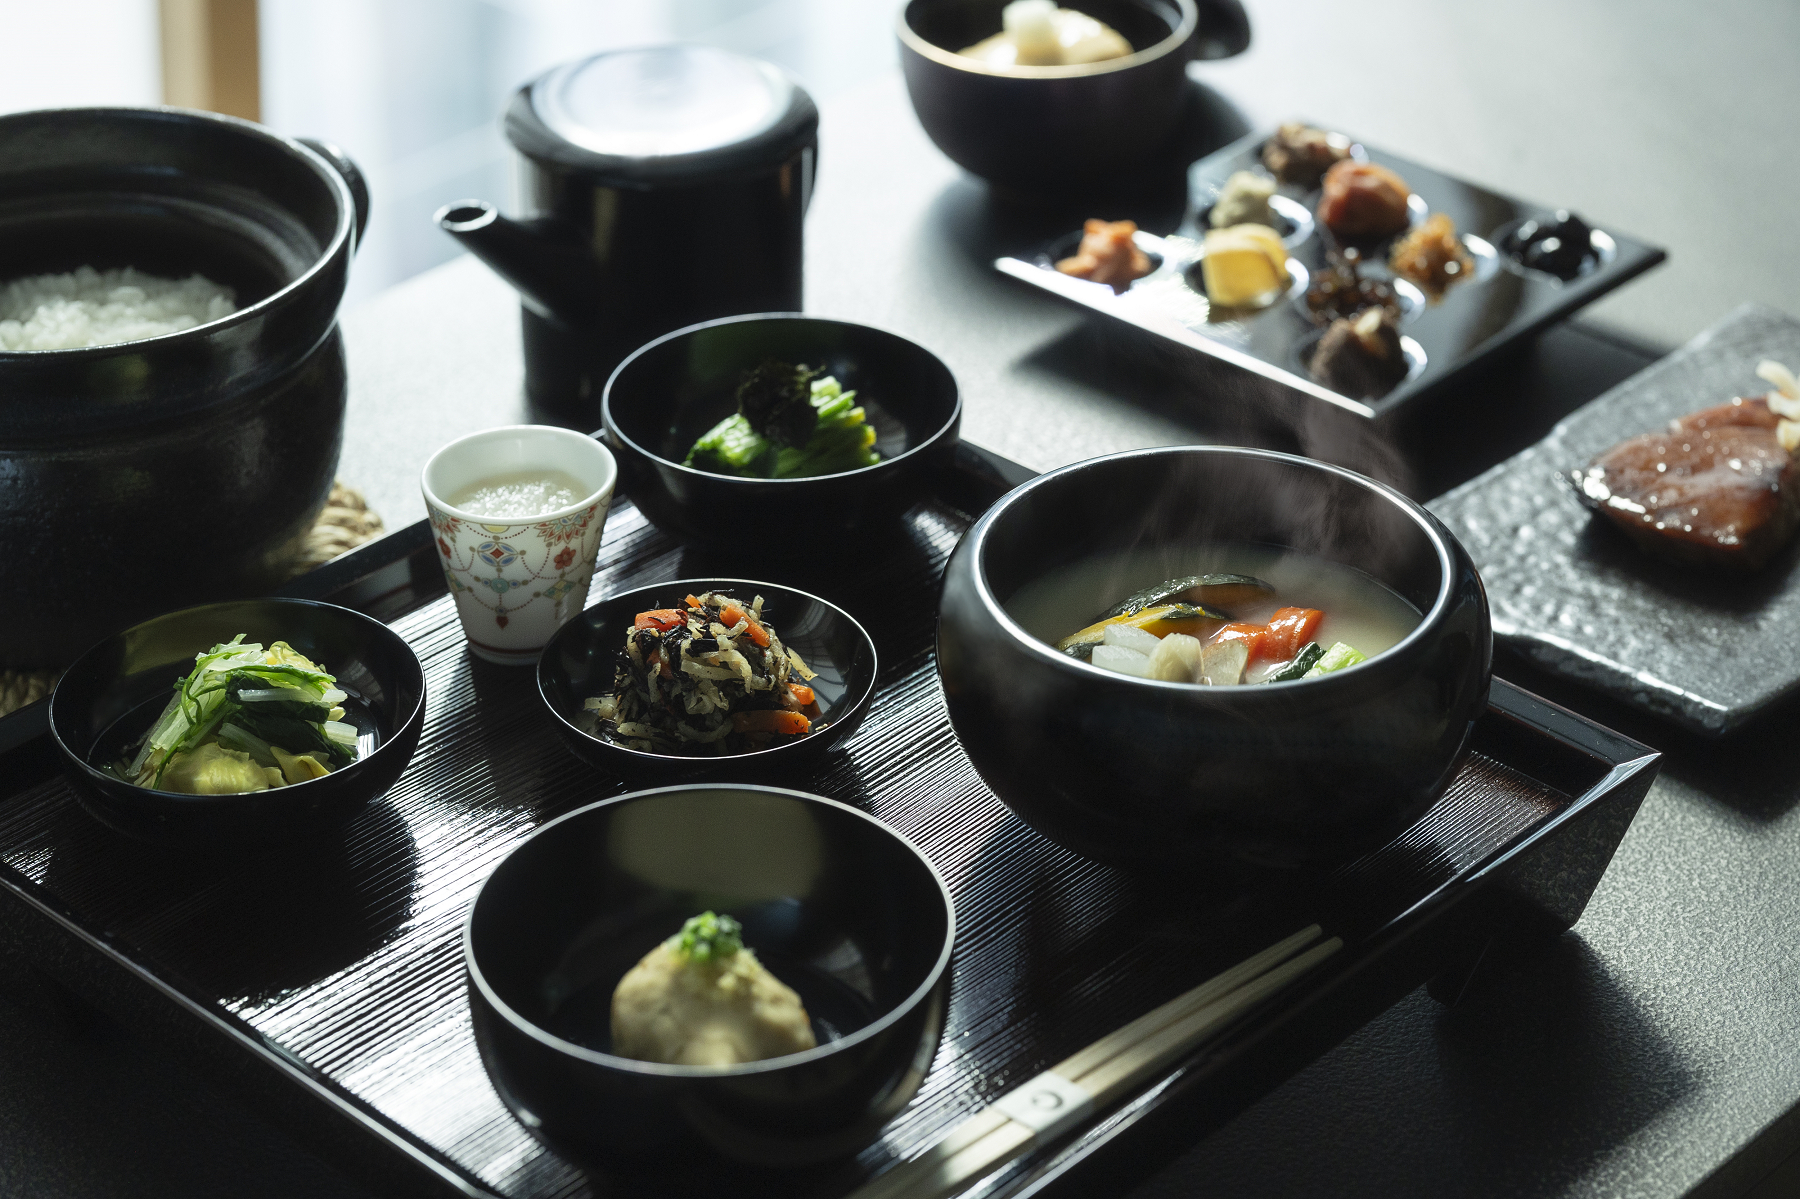 品味日本料理的五味五色五法，虹夕諾雅東京推出全新「早晨覺醒」早餐體驗